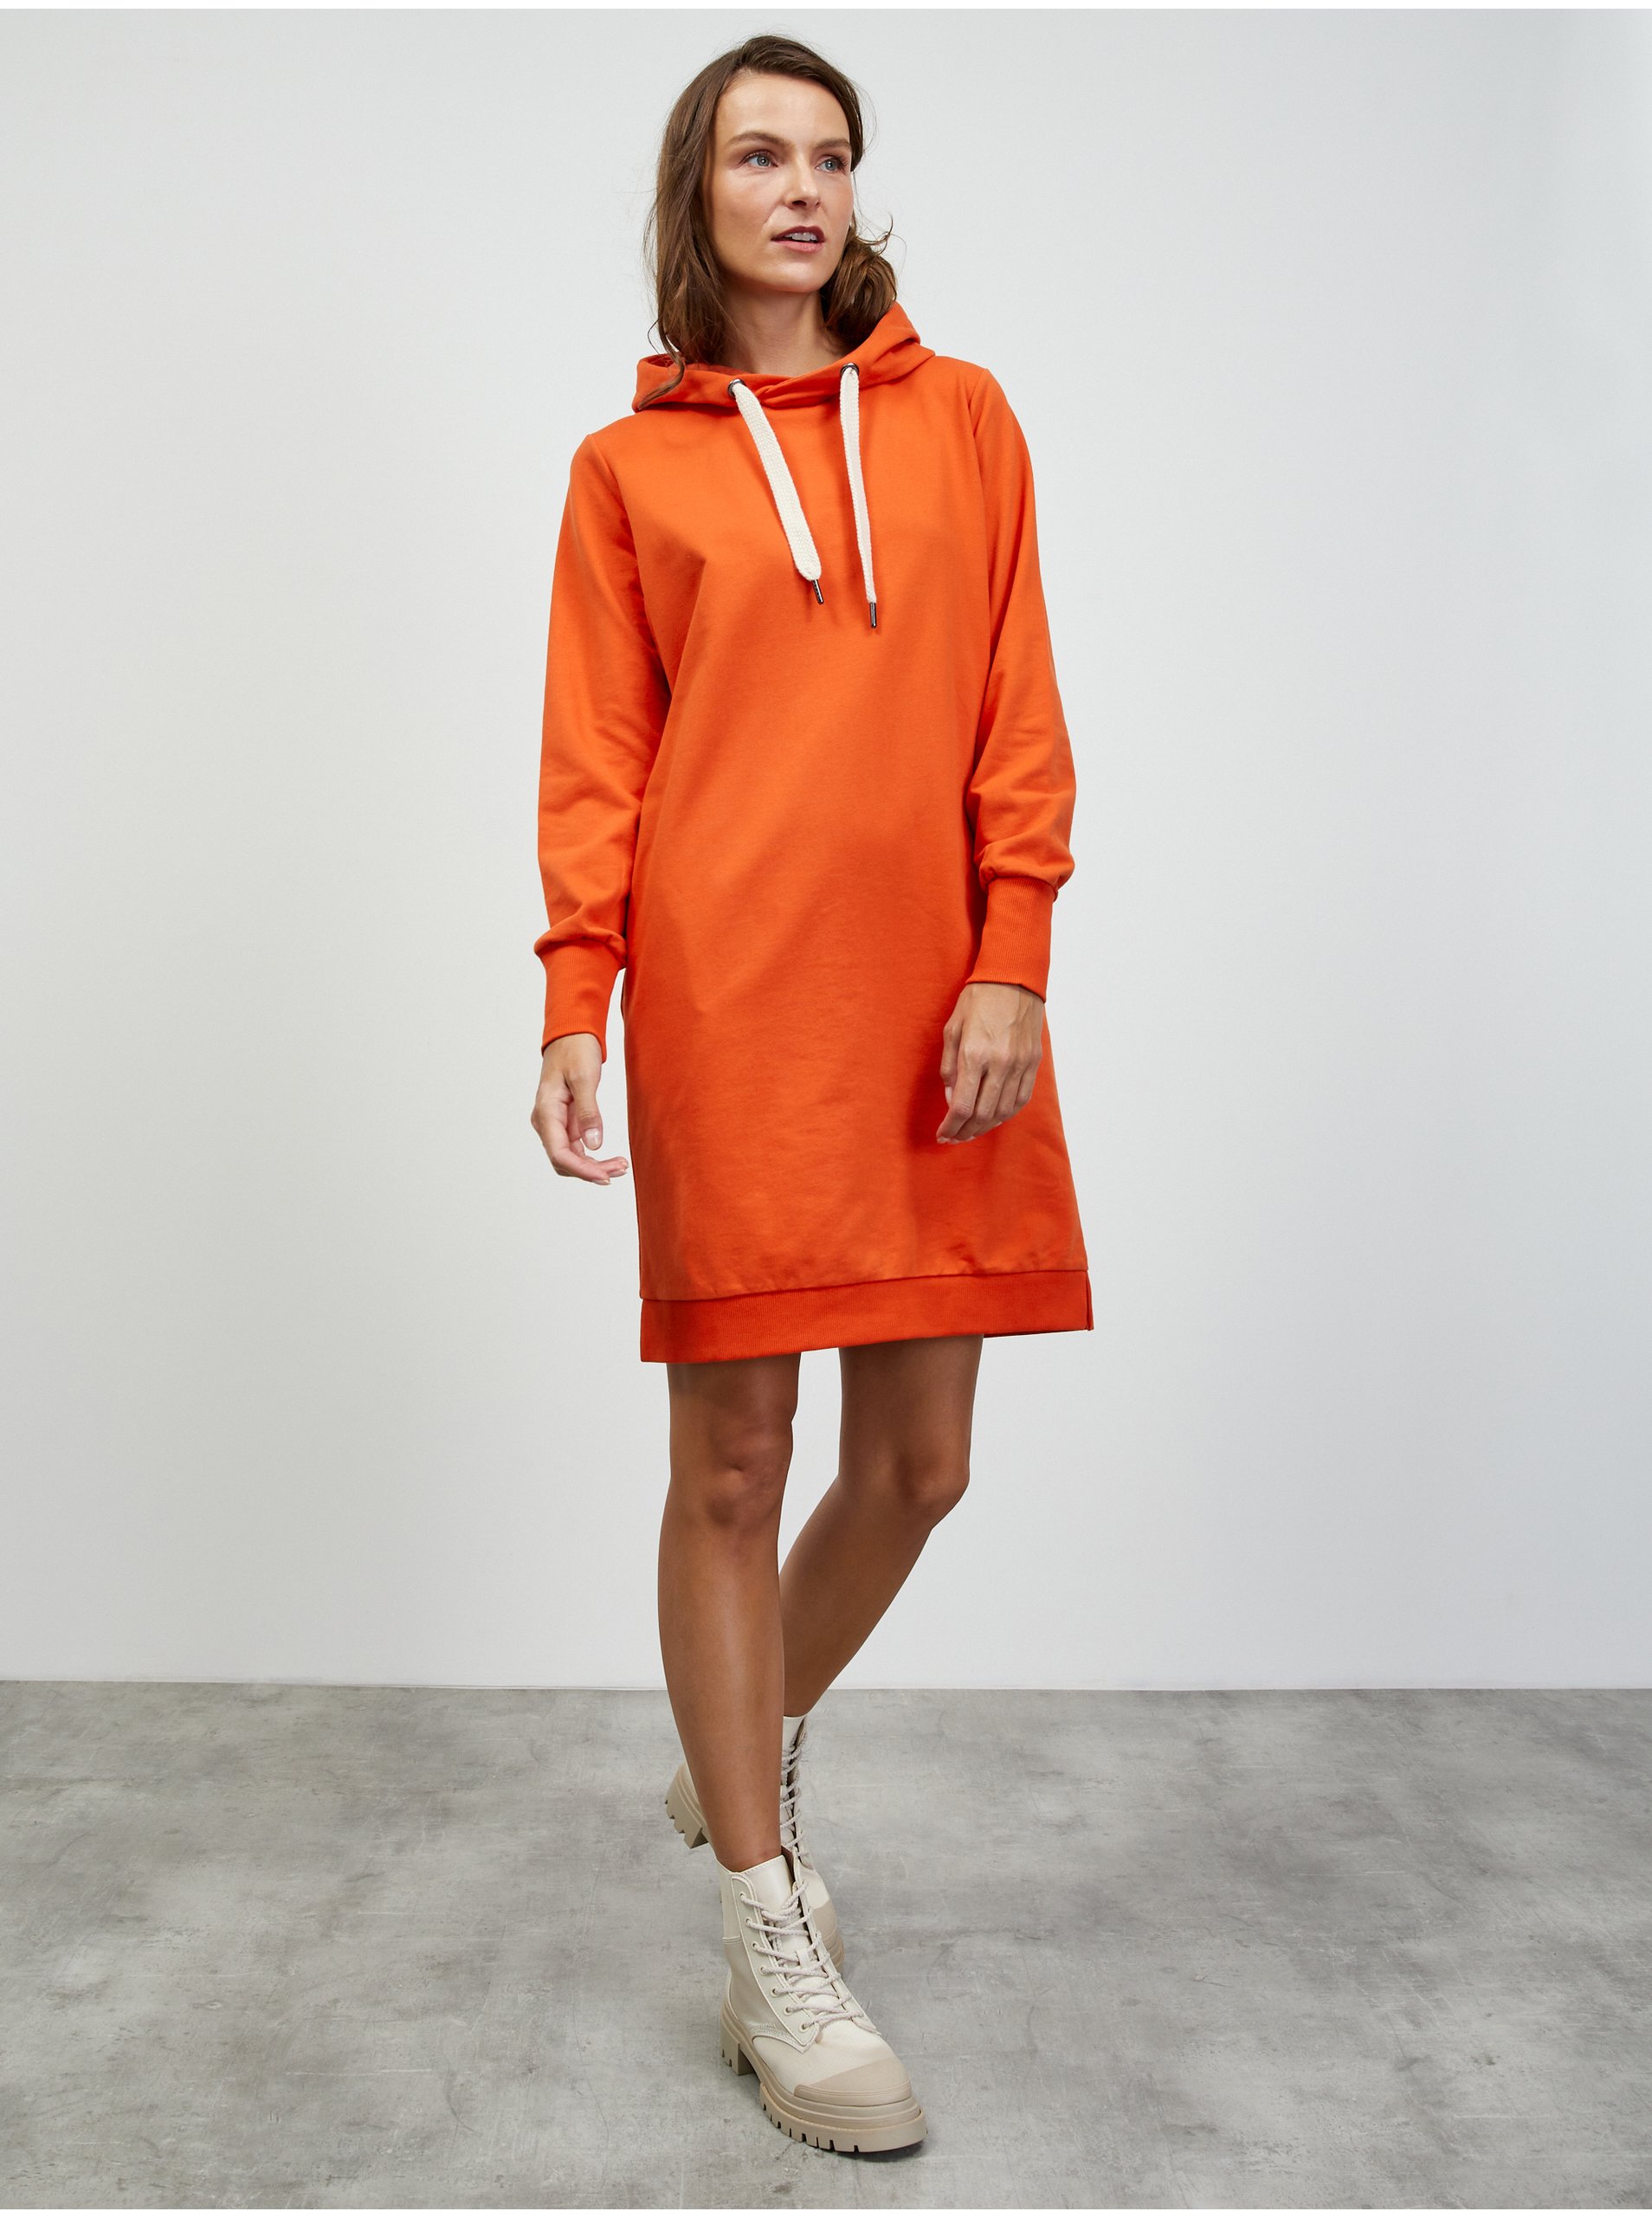 Lacno Oranžové mikinové basic šaty s kapucňou ZOOT.lab Kirsten